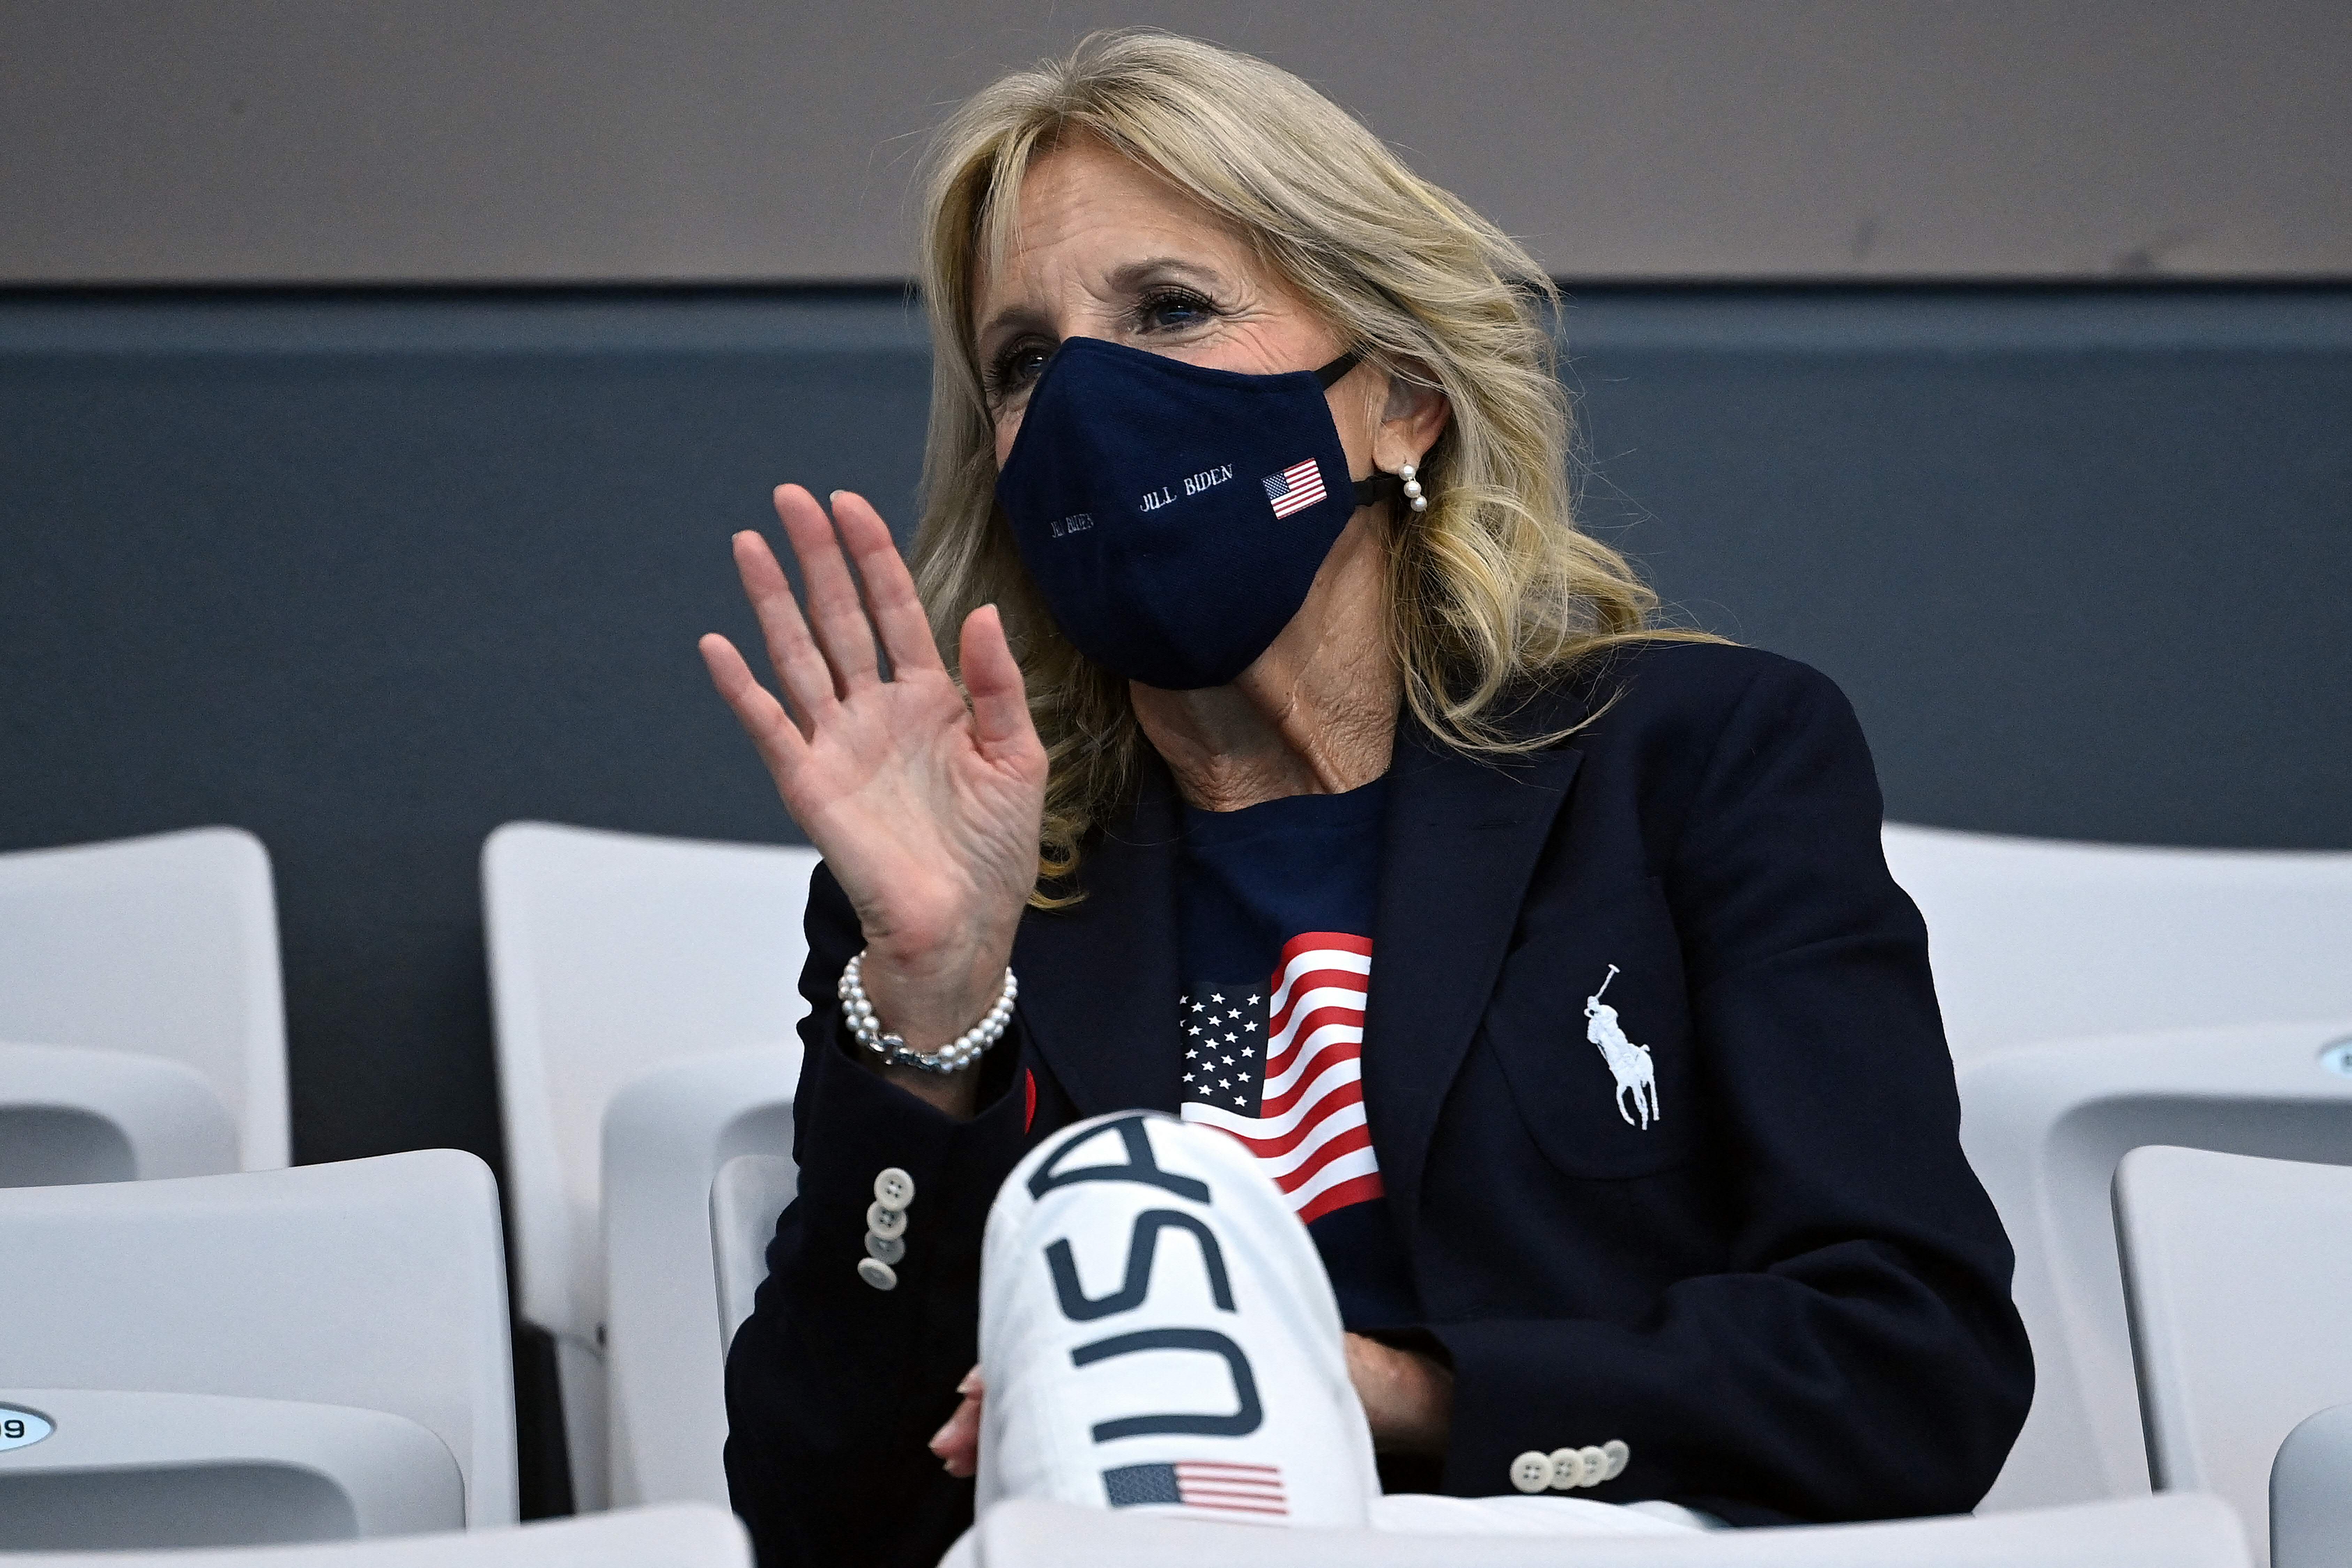 Jill Biden wears official Team USA Ralph Lauren outfit at Olympics